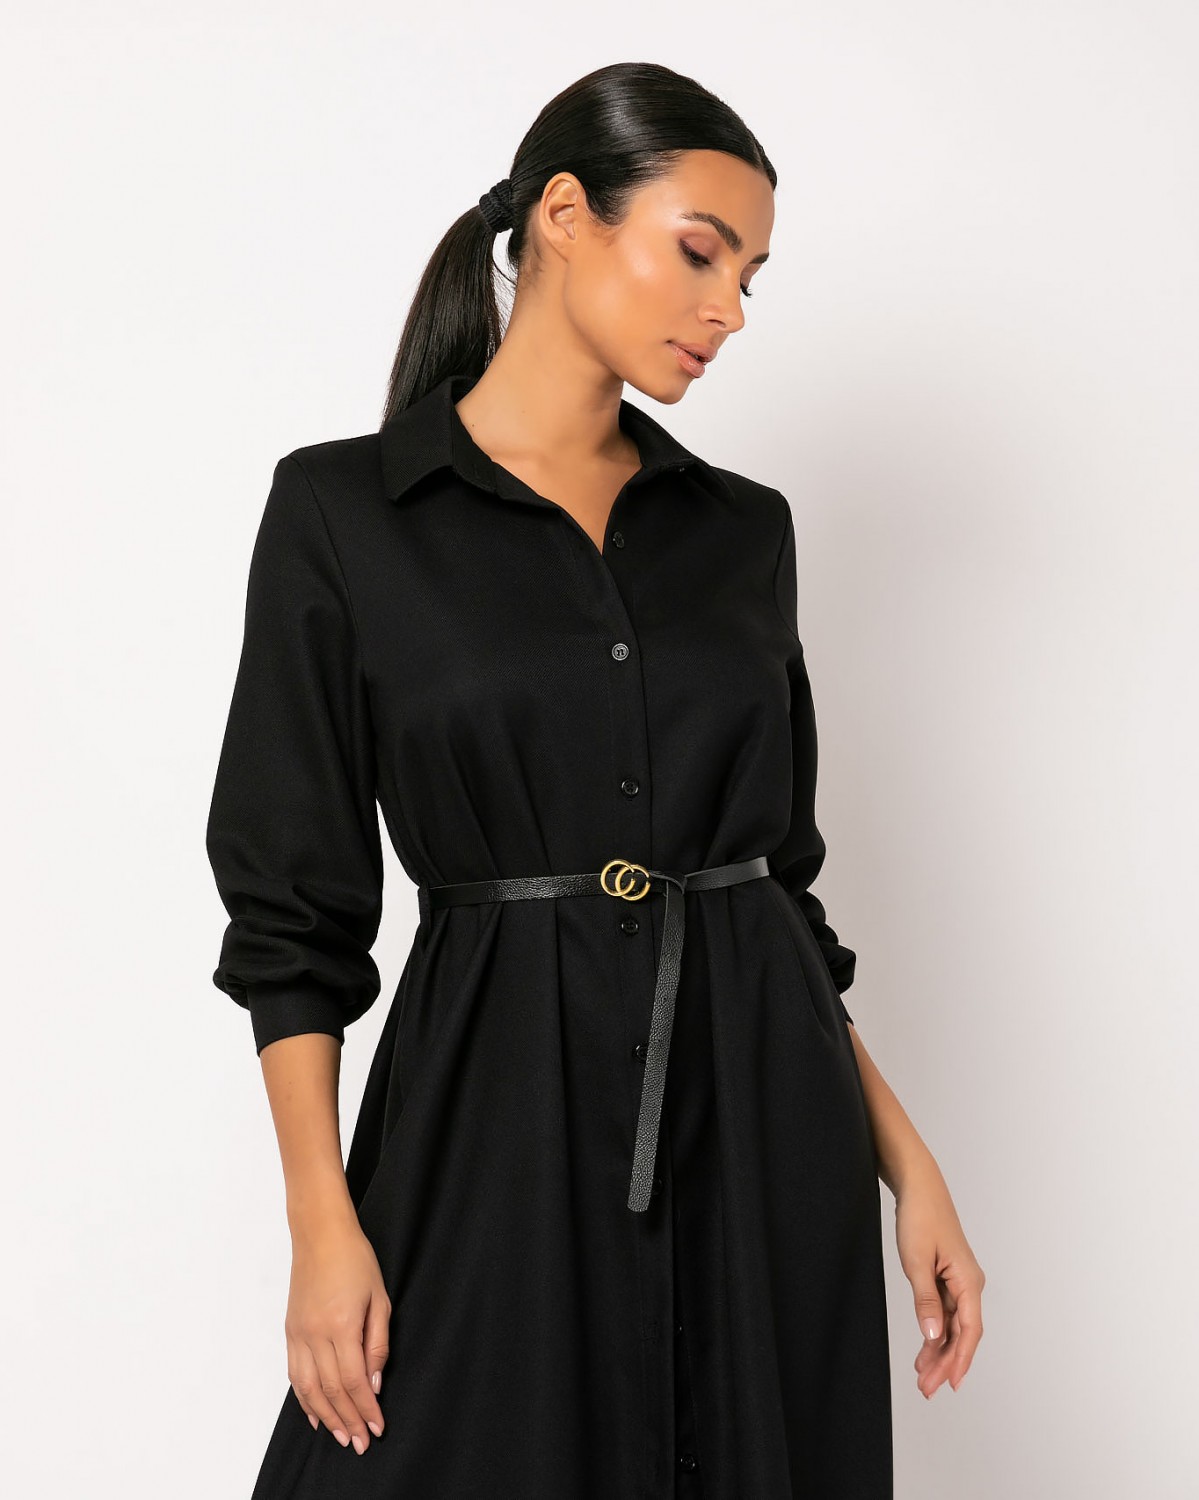 Φόρεμα Midi σεμιζιέ Μαύρο 